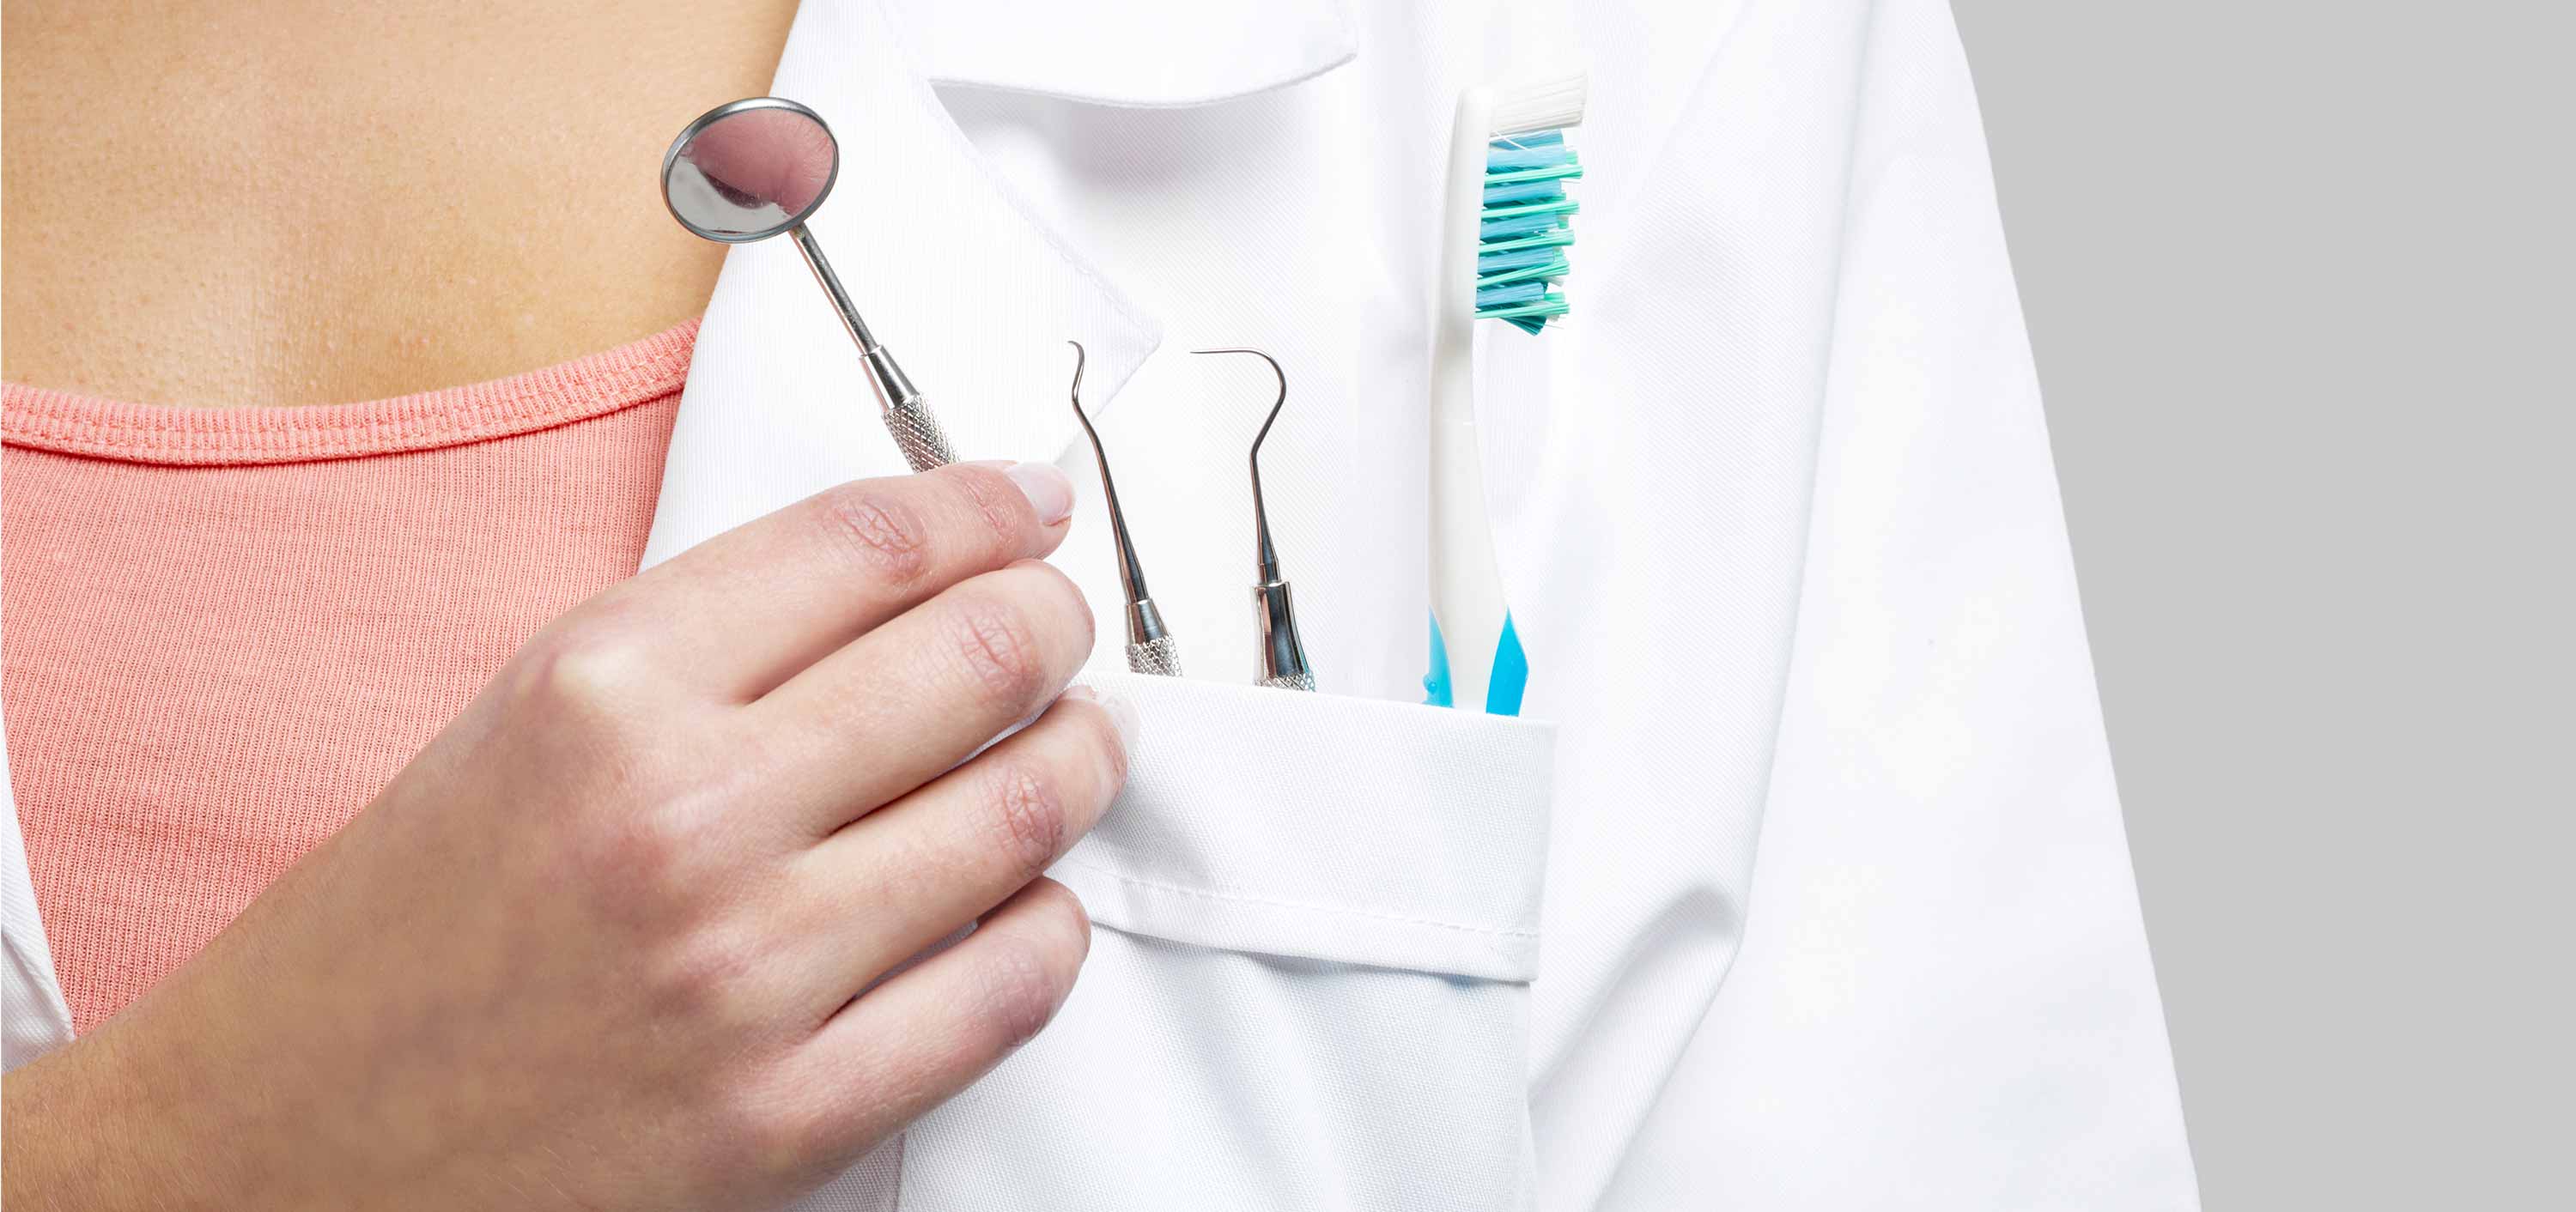 Dentist placing dental equipment in their white coat pocket